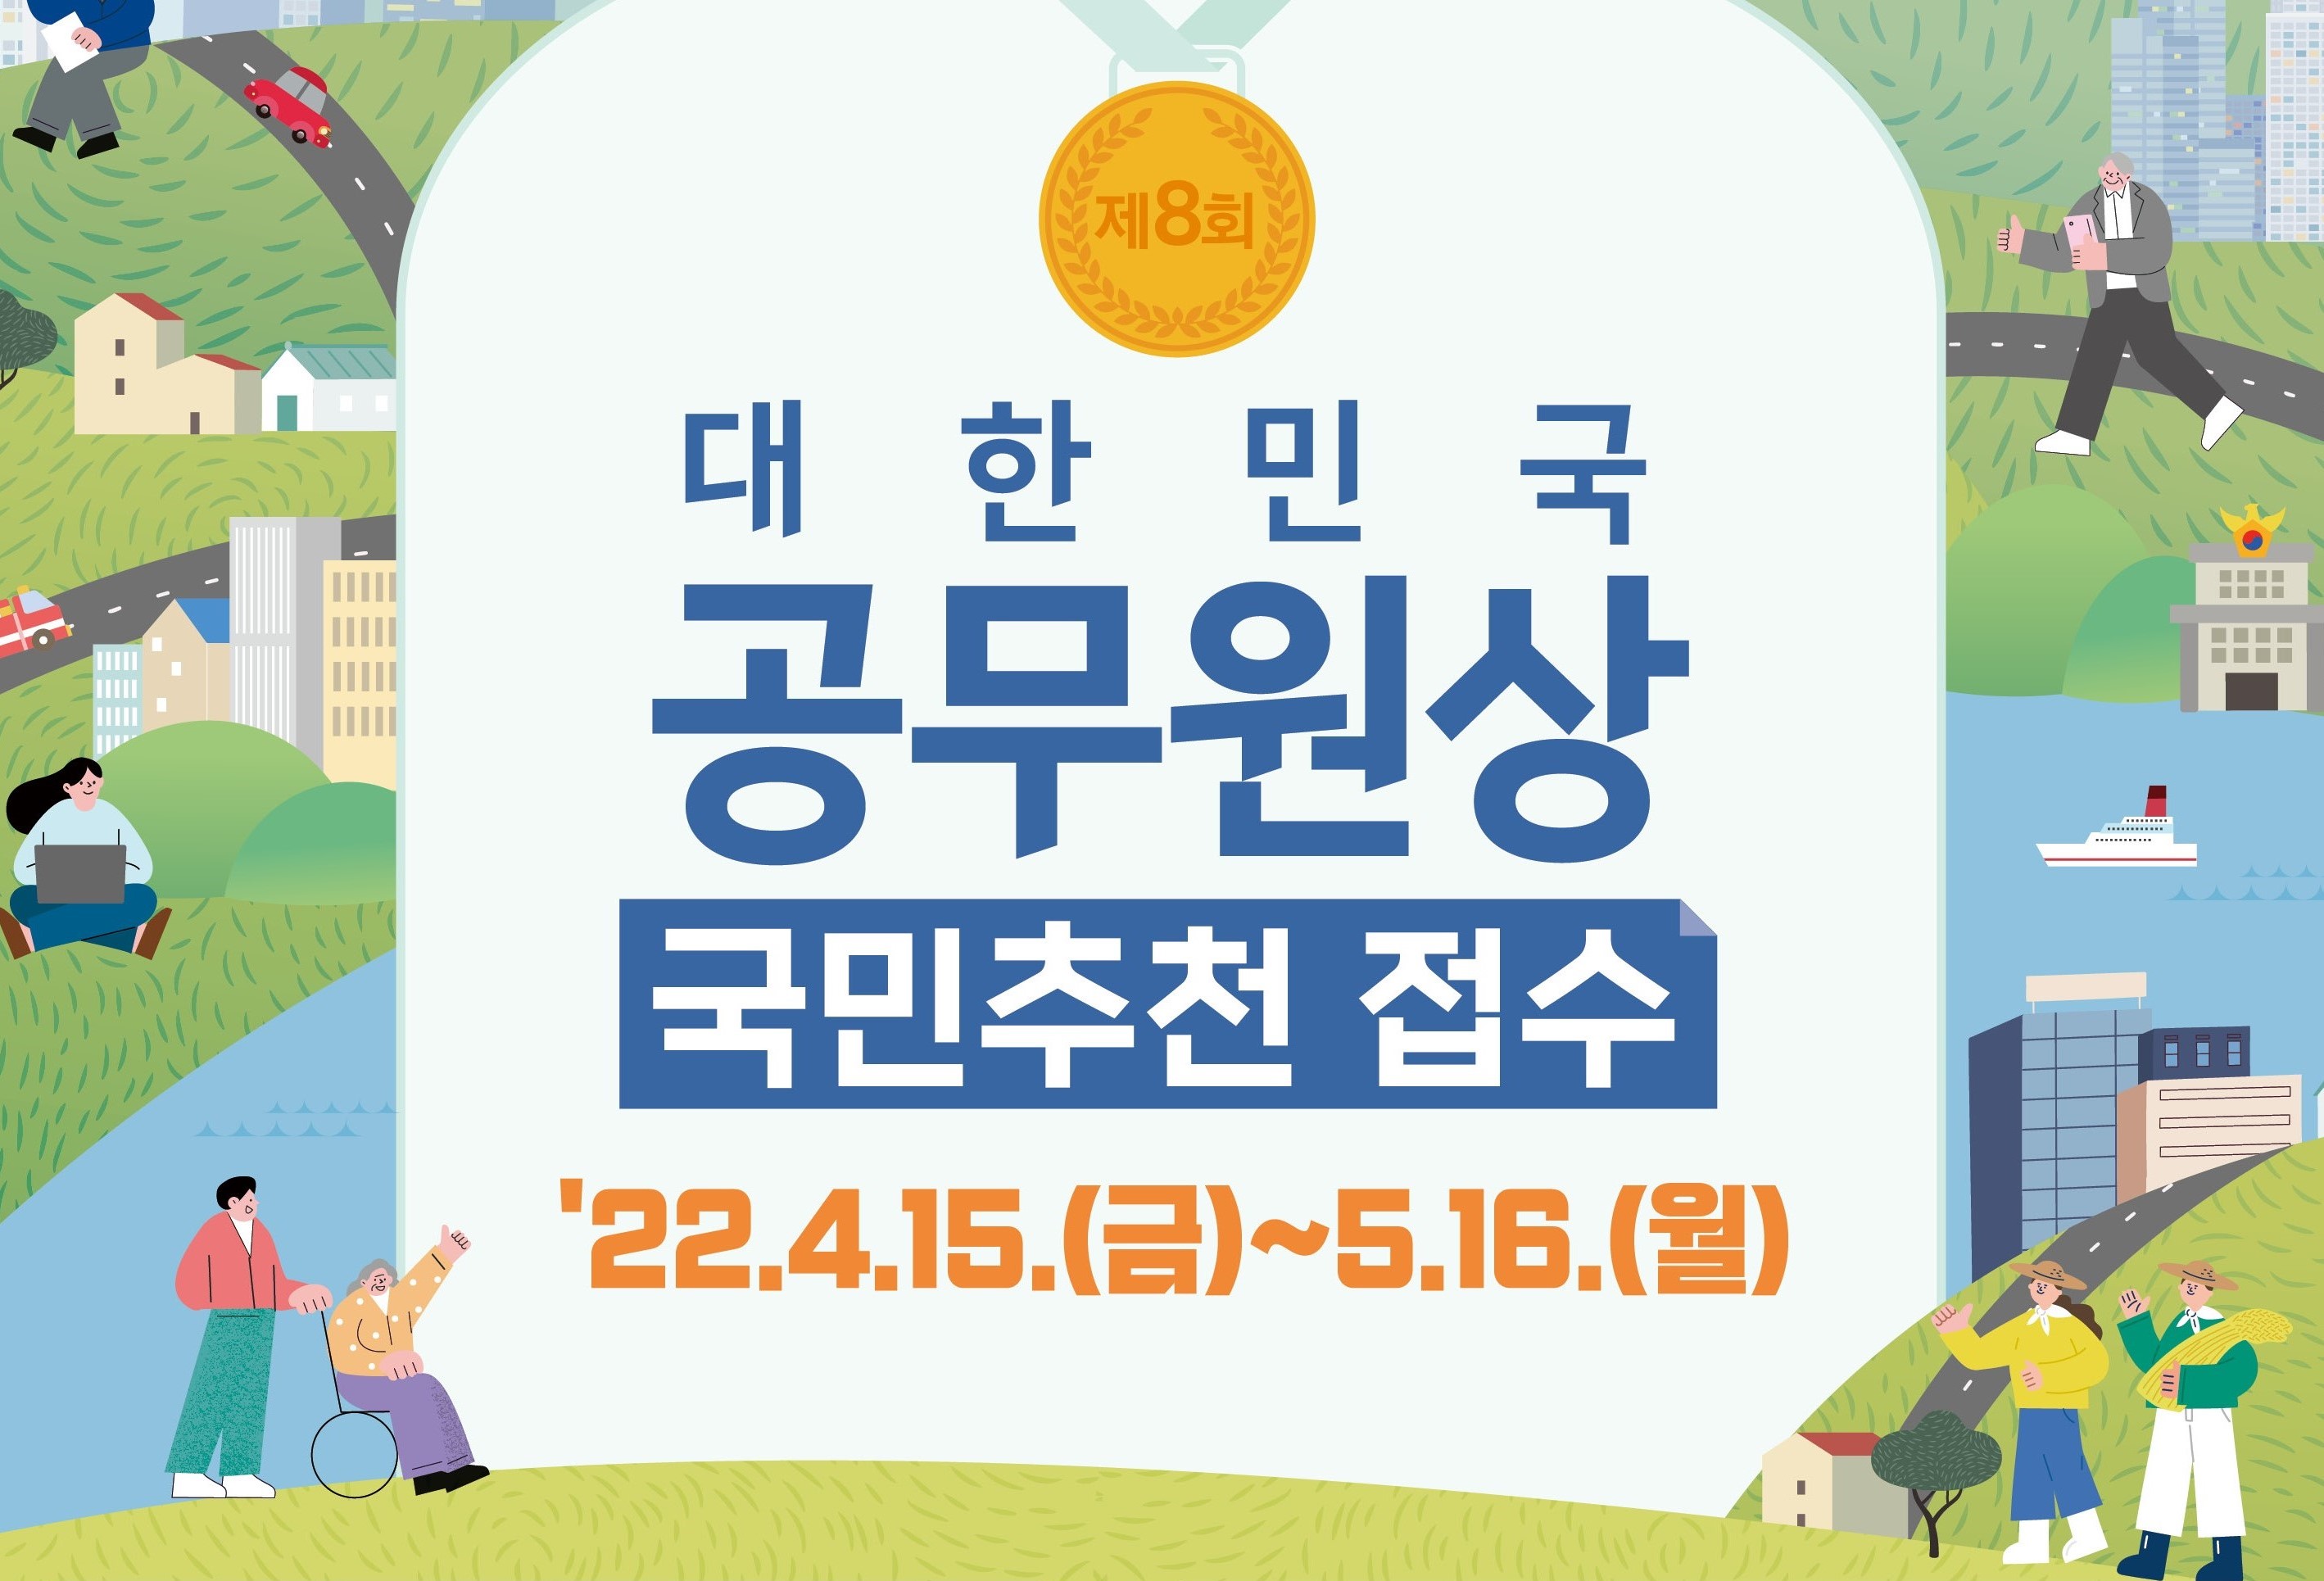 제8회
대한민국 공무원상 국민추천 접수
'22.4.15.(금) ~ 5.16.(월)